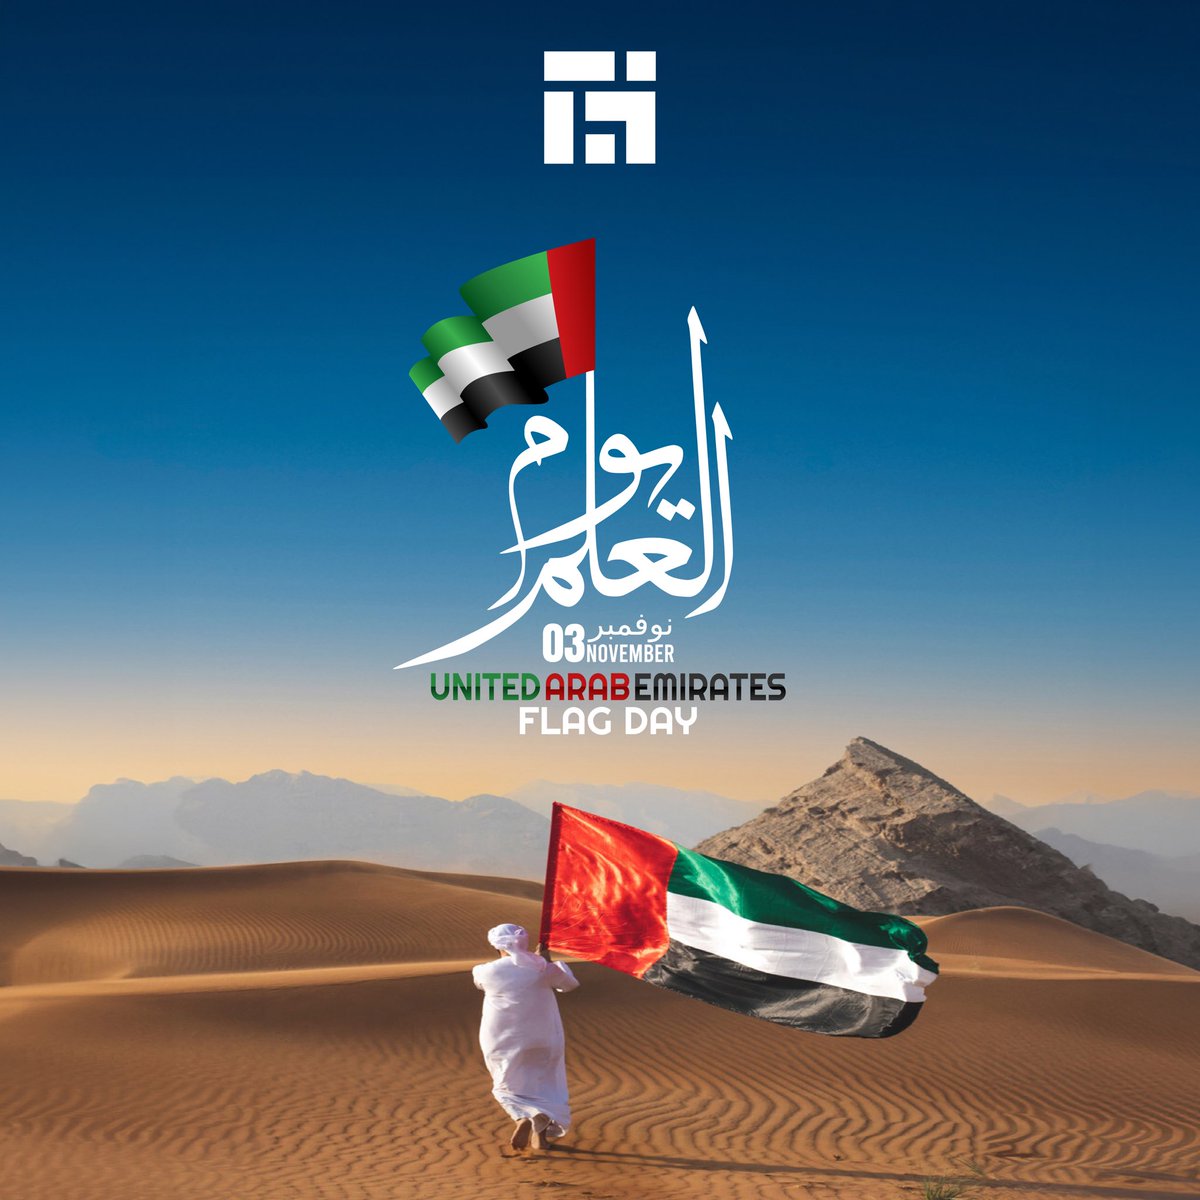 يوم العلم هو رمز للوحدة والاعتزاز الوطني. تتمنى سستينبل هومز لجميع مواطني دولة الإمارات يوم علم وطني سعيد. #يوم_العلم #ابوظبي #الامارات #يوم_العلم_الاماراتي #دبي #الشارقة